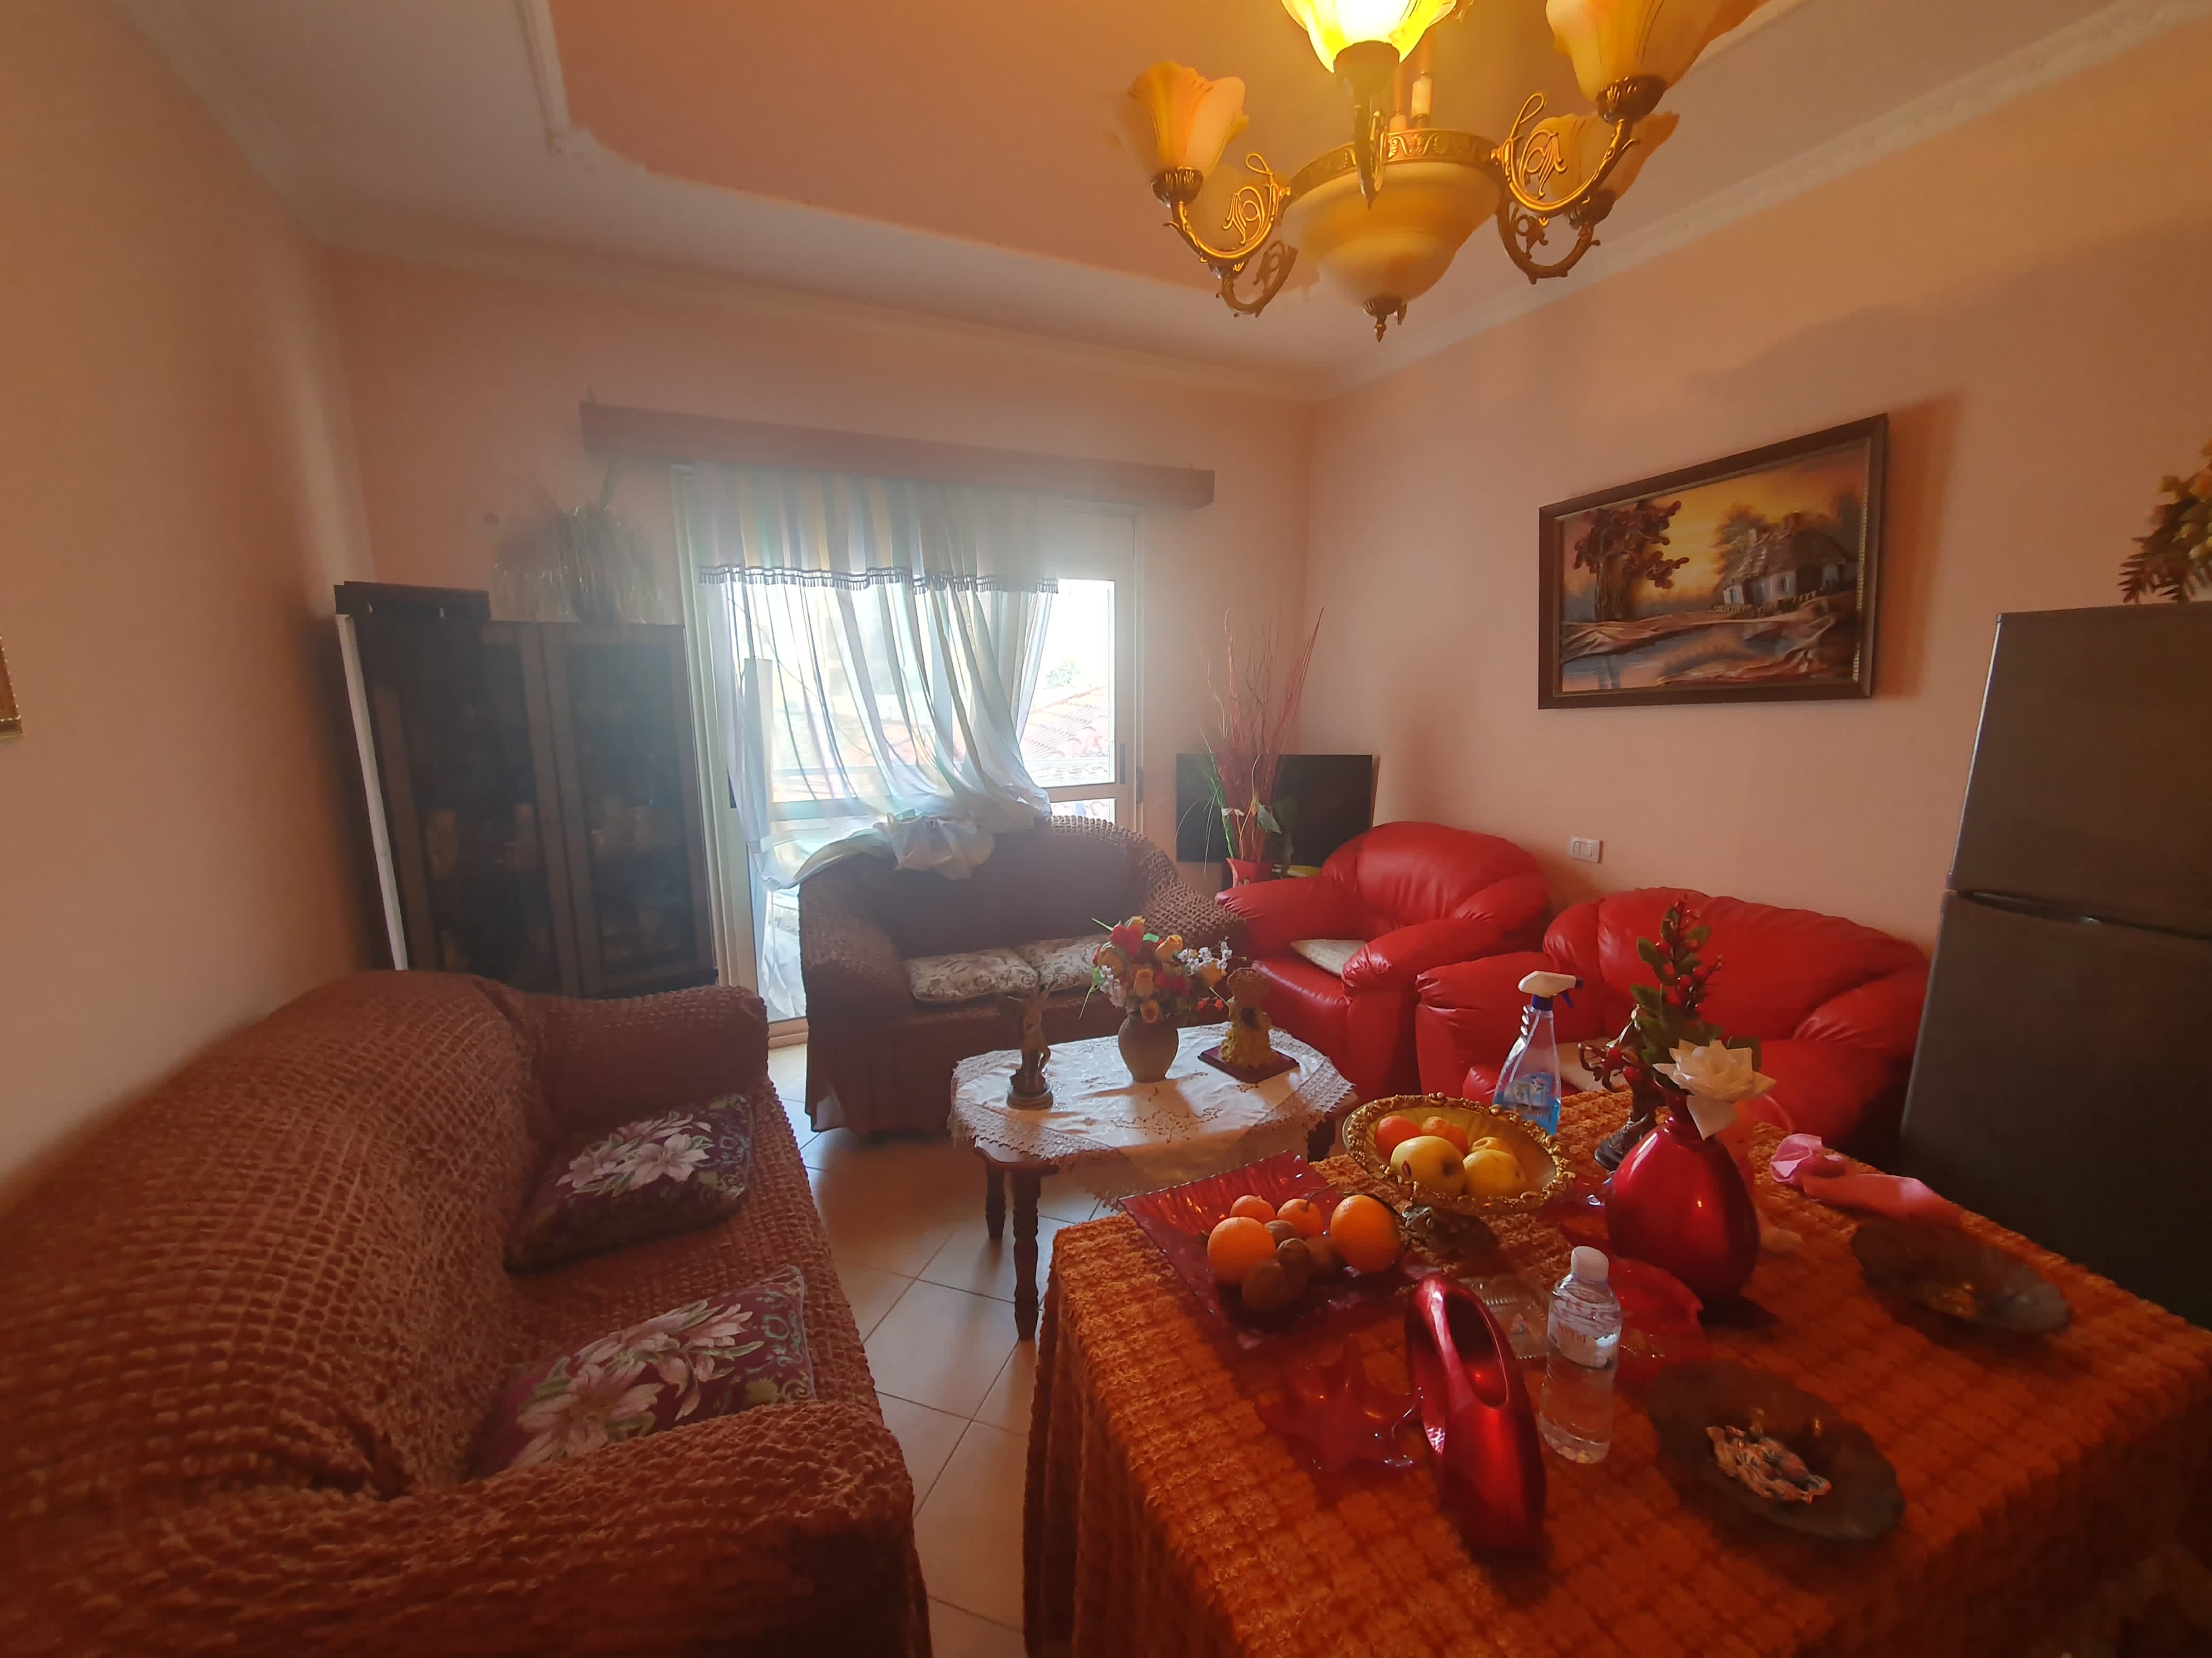 Foto e Apartment në shitje Prane kishes Orthodokse, Vlorë